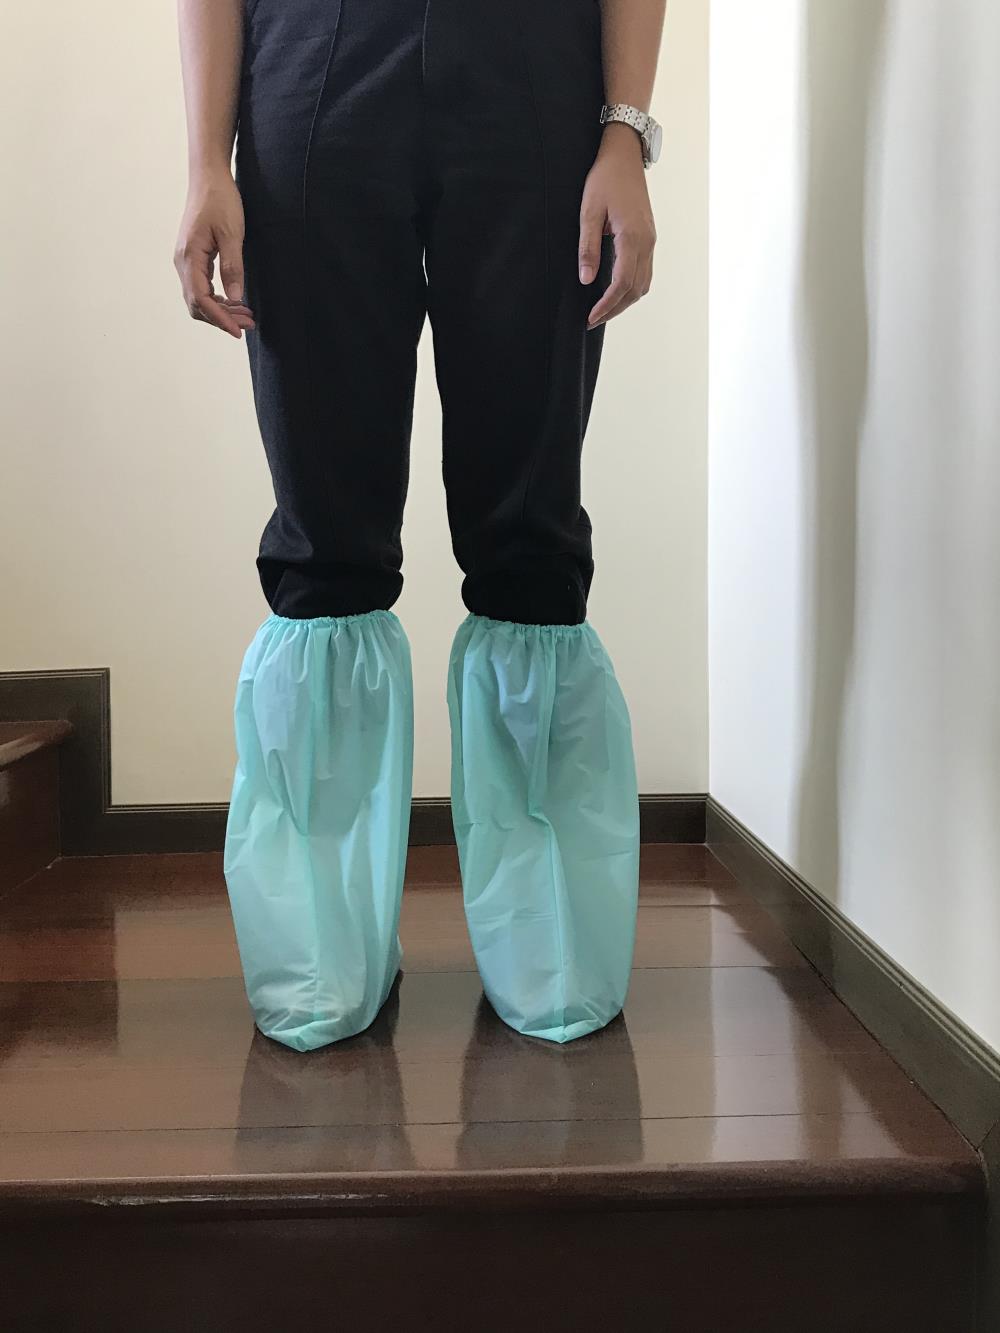 ถุงครอบรองเท้า boot cover แบบหนา สีเขียว (แพ็ค 12 คู่) ,ถุงครอบรองเท้า,SOLOPOT,Plant and Facility Equipment/Safety Equipment/Foot Protection Equipment